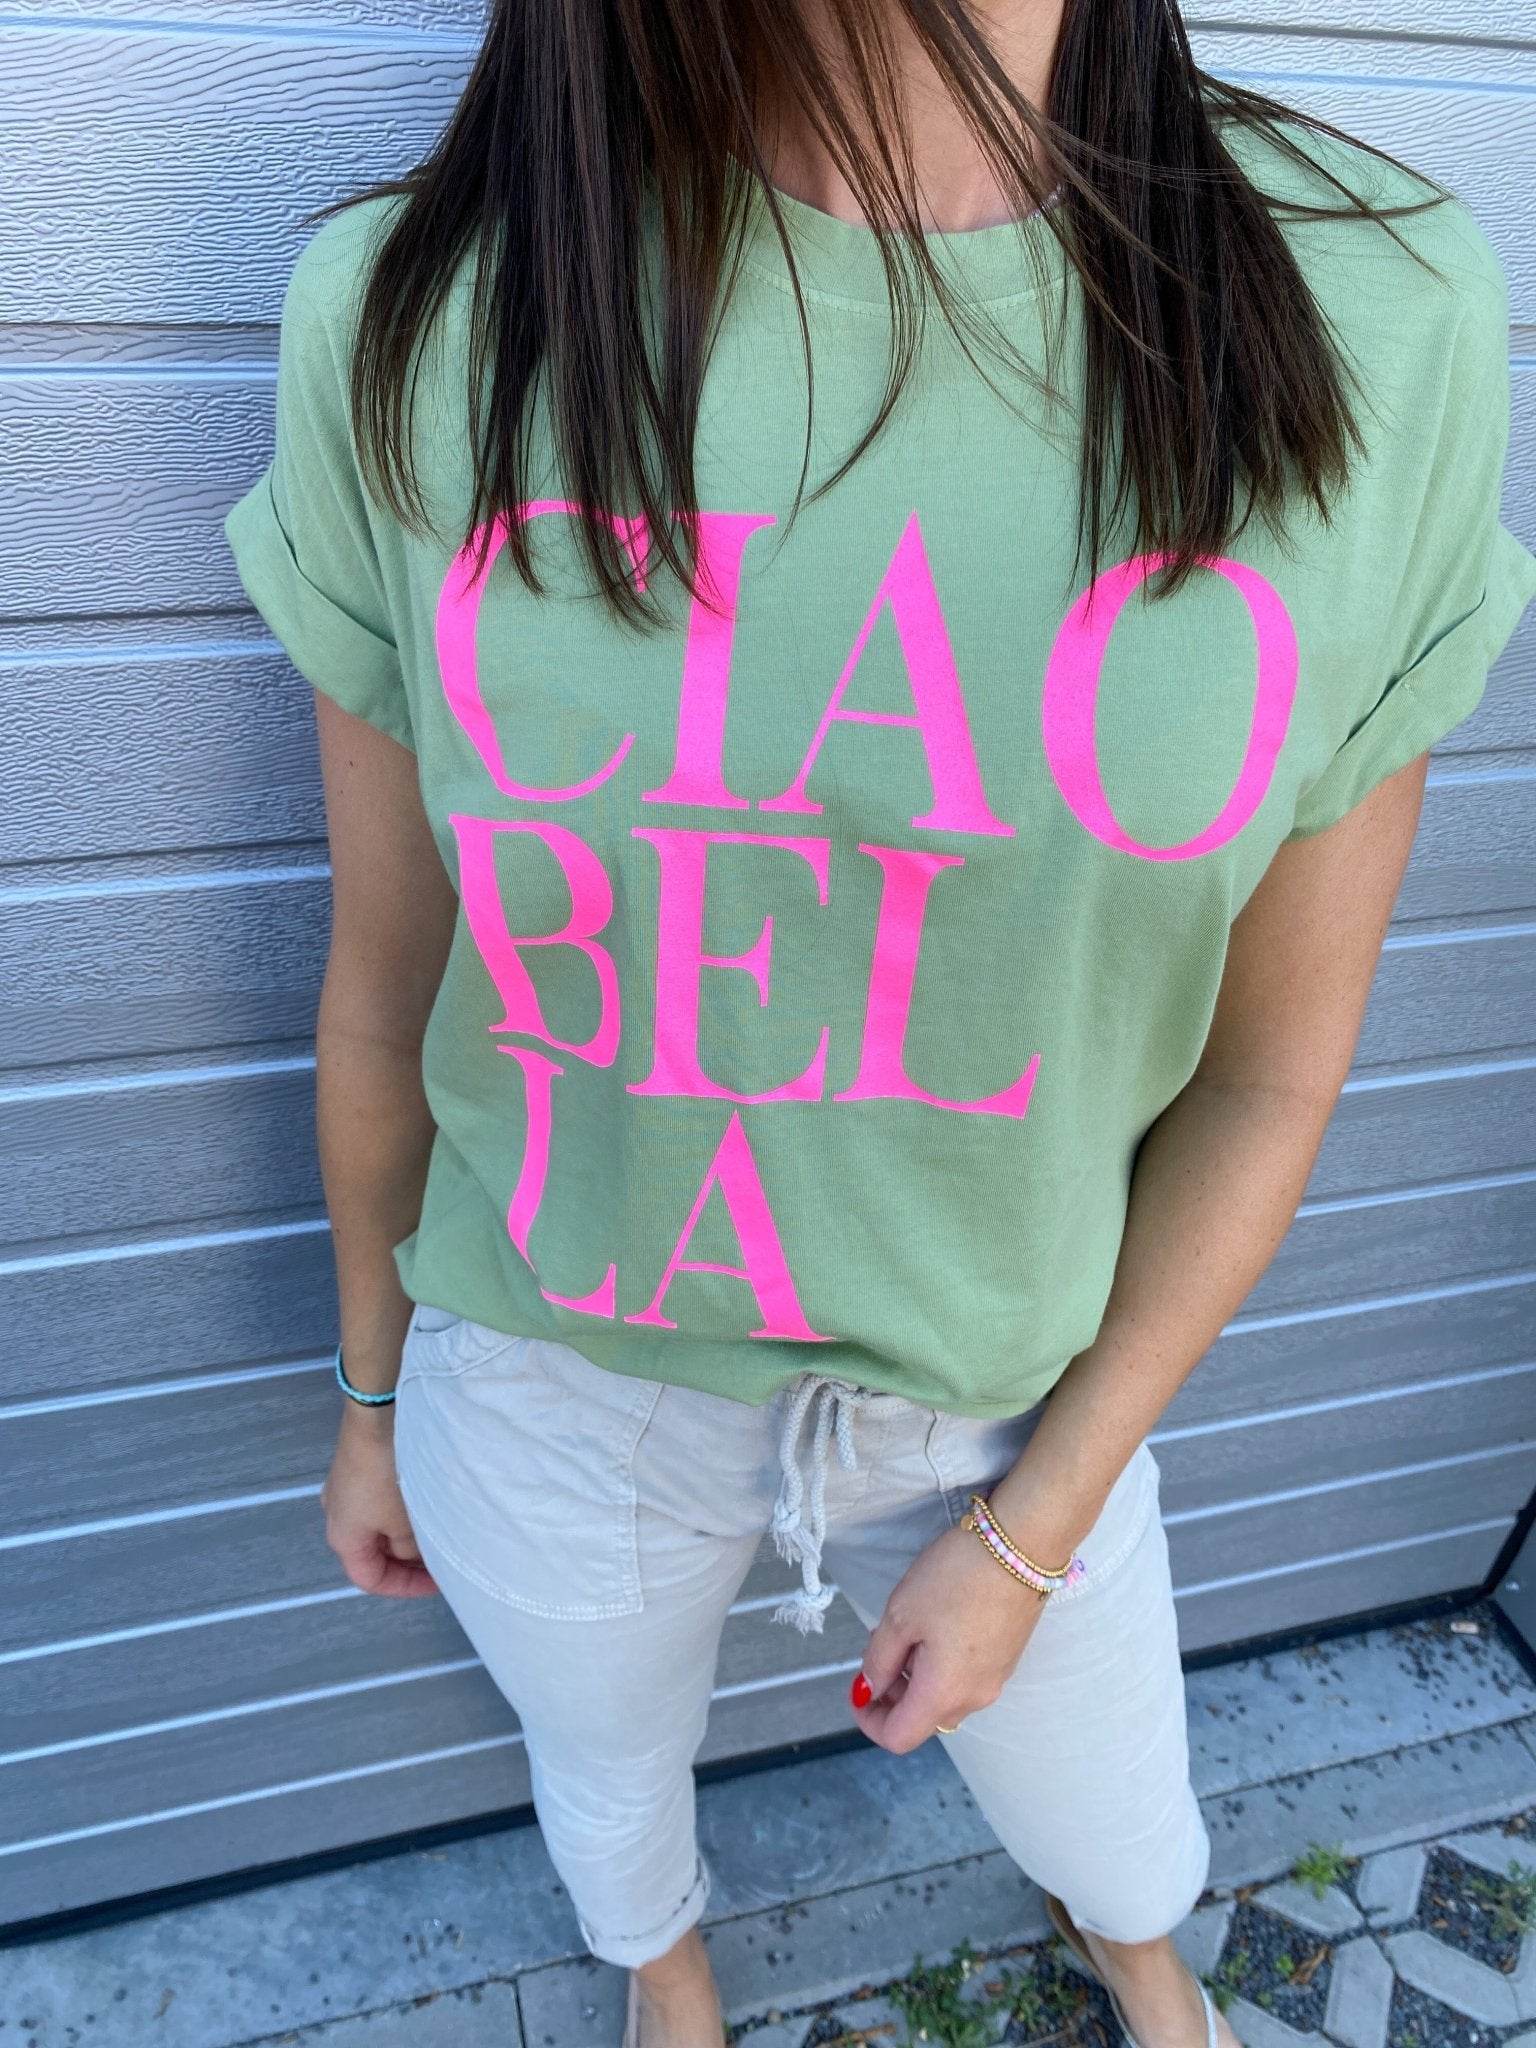 T-Shirt CIAO BELLA - Strandmädchen